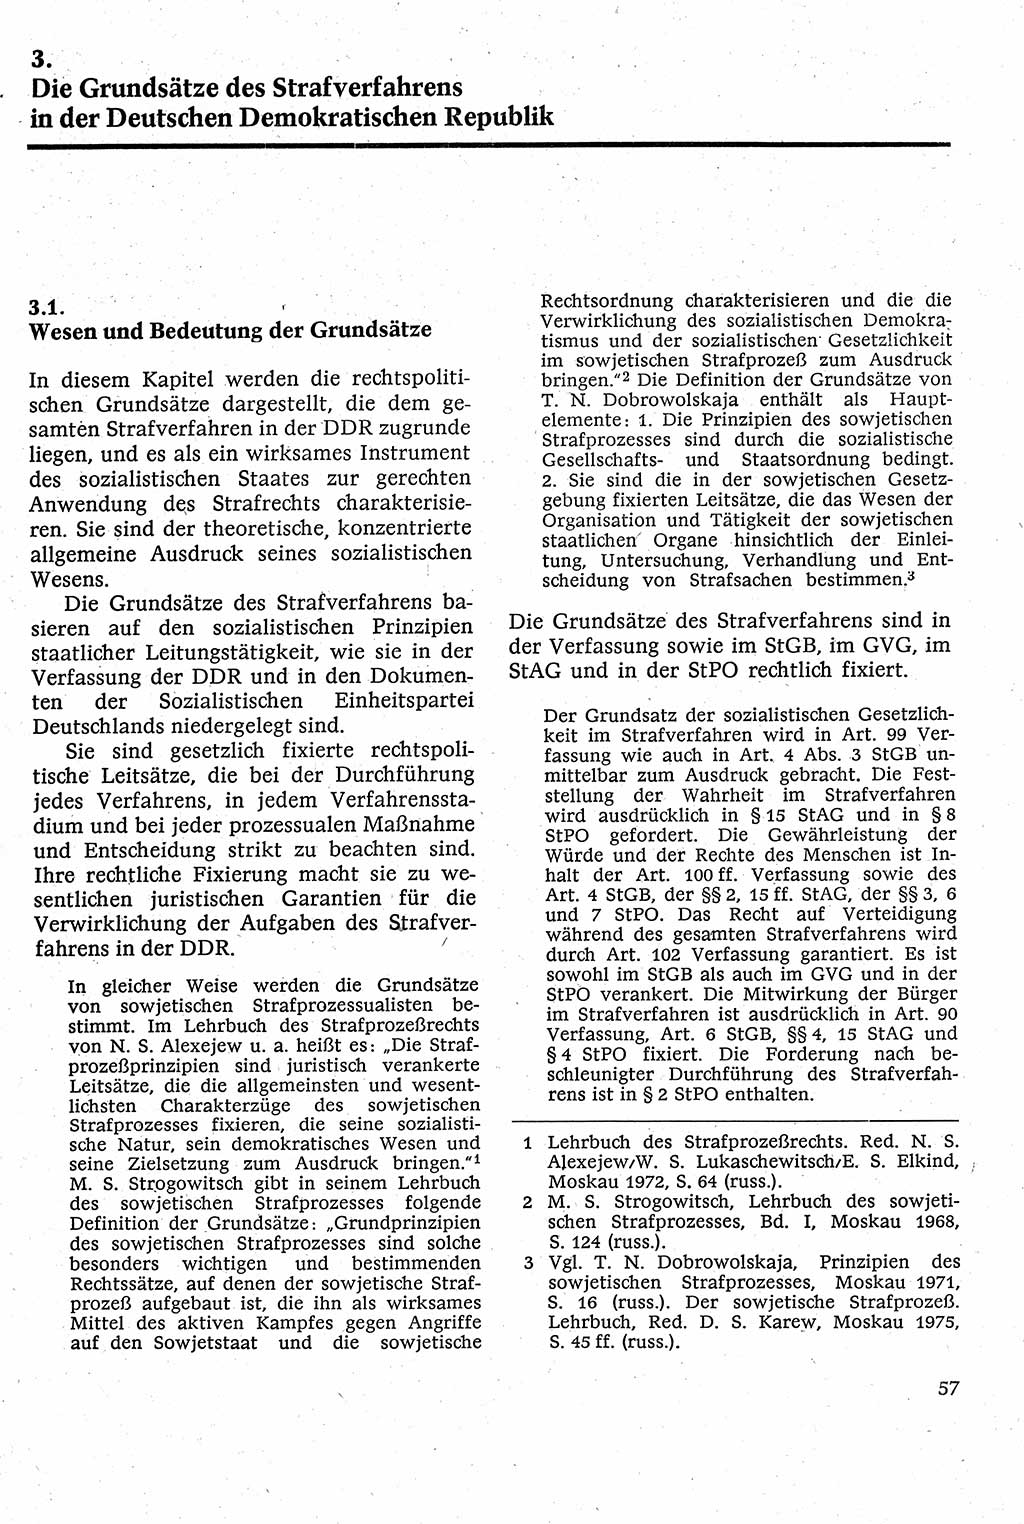 Strafverfahrensrecht [Deutsche Demokratische Republik (DDR)], Lehrbuch 1982, Seite 57 (Strafverf.-R. DDR Lb. 1982, S. 57)